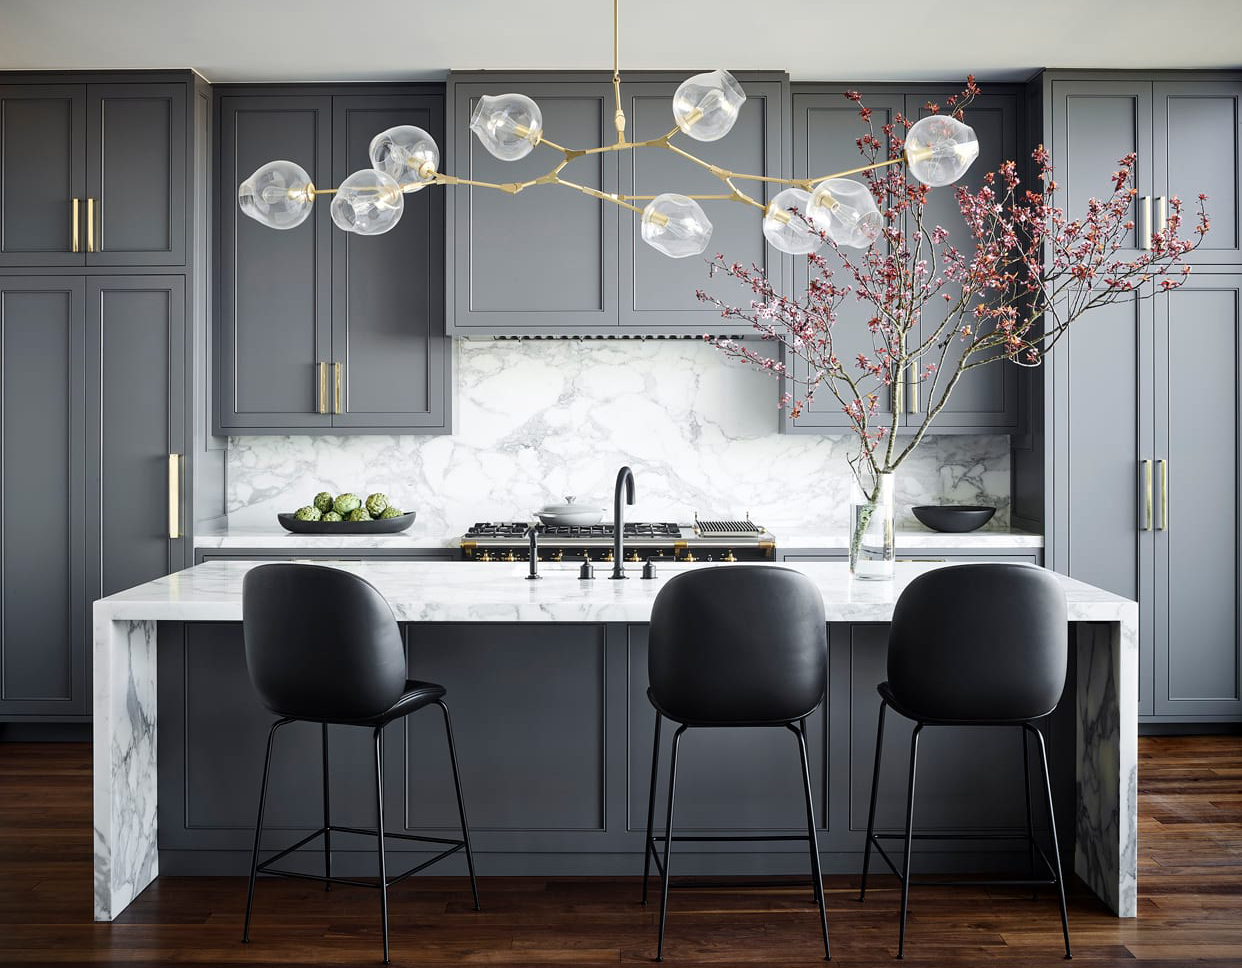 modern kitchen design in grey tones - nicole hollis